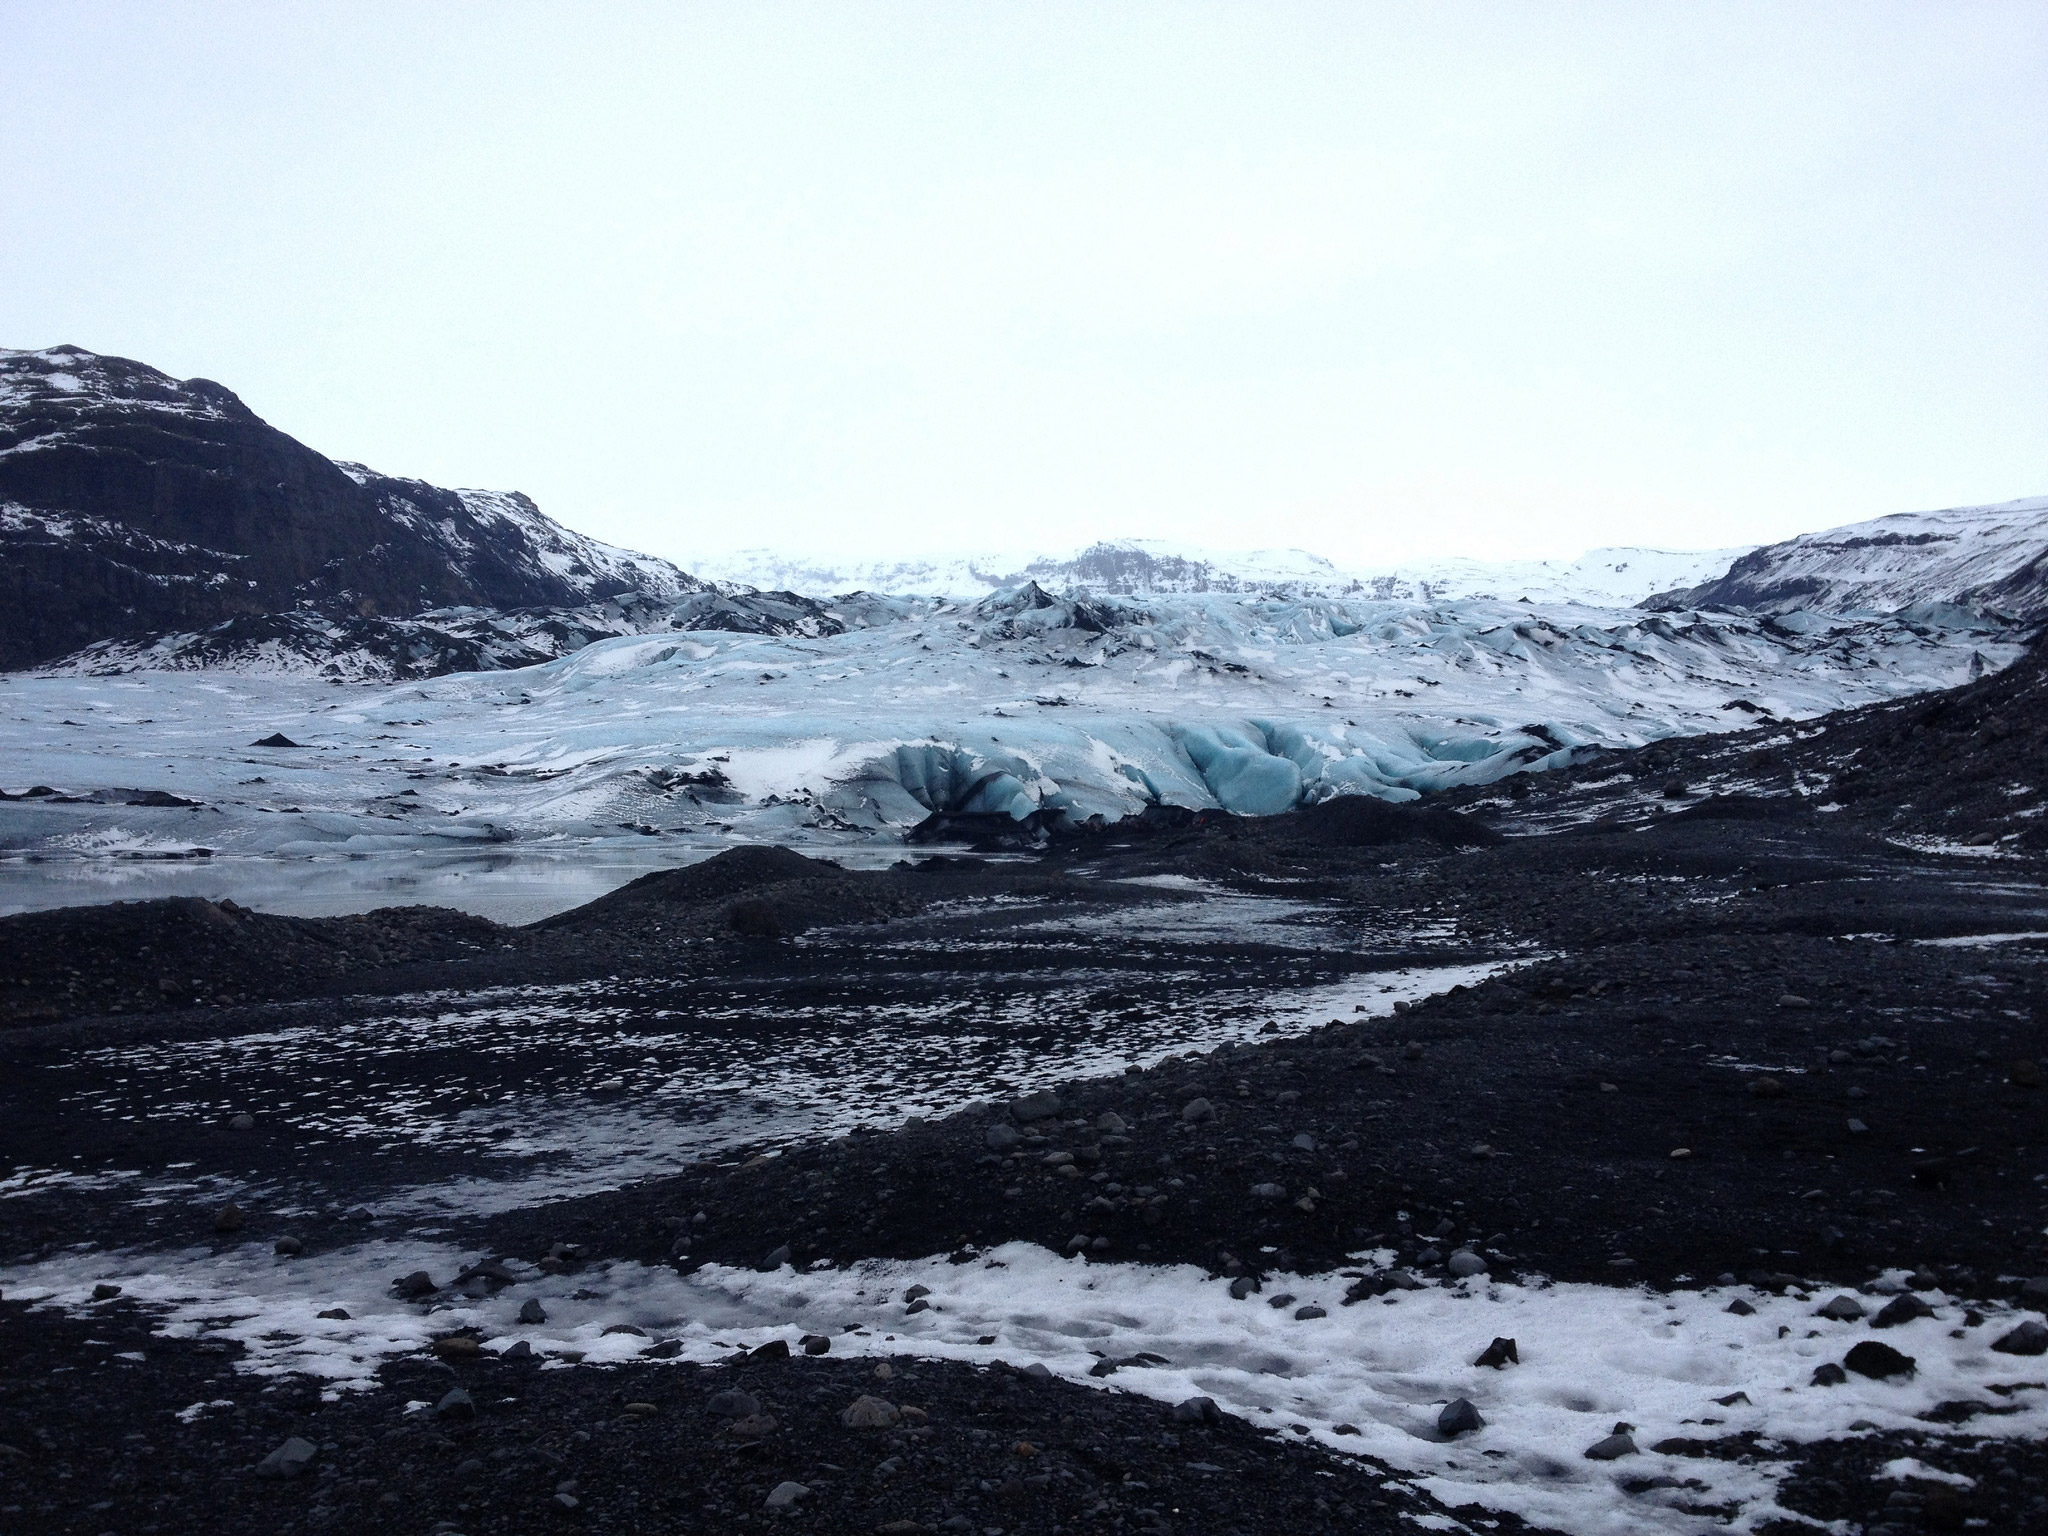 The Sólheimajökull glacier